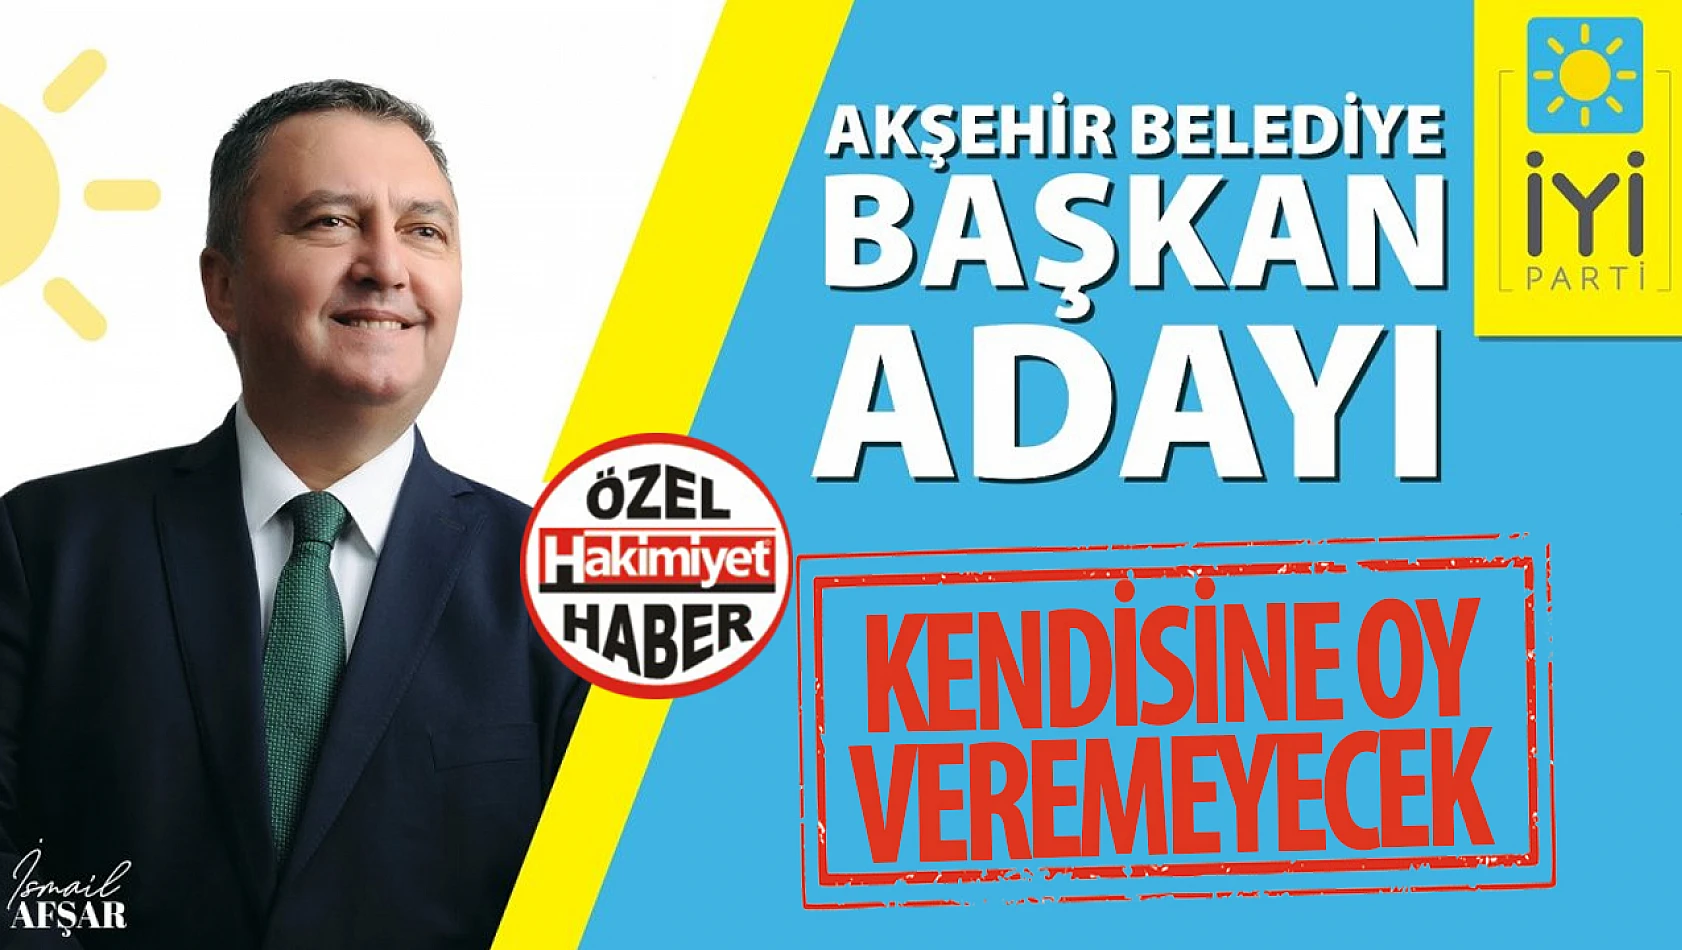 İYİ Parti Akşehir Belediye Başkan Adayı Kendisine Oy Veremeyecek